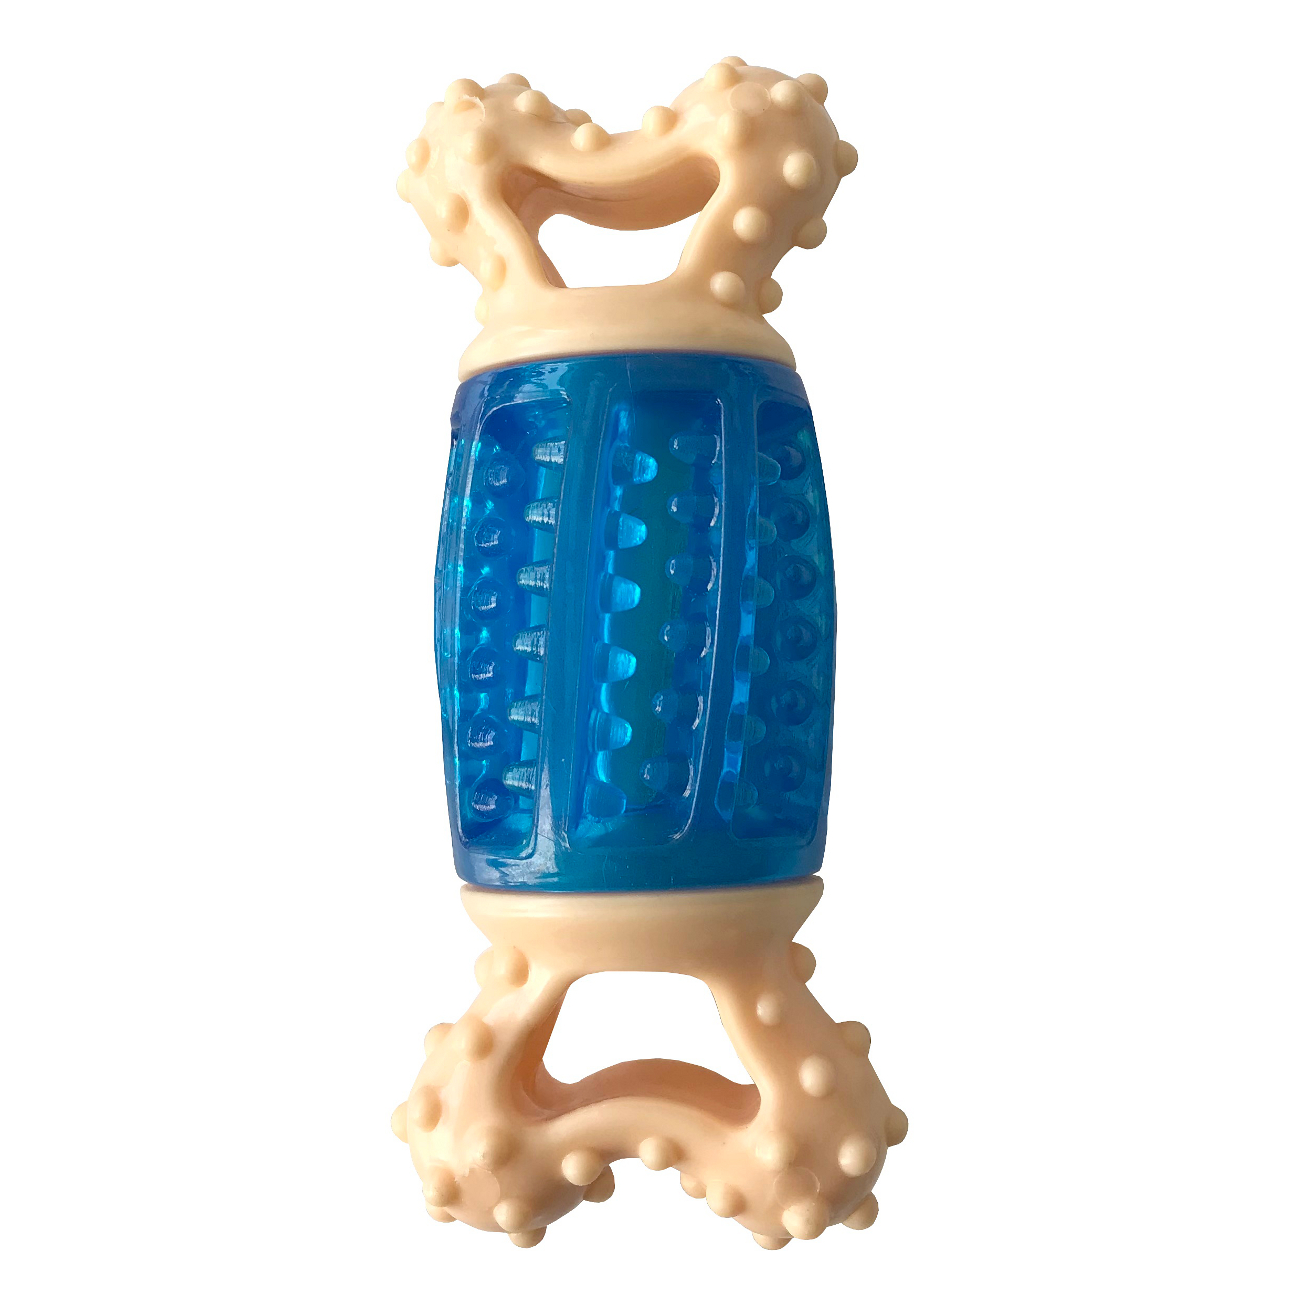 Lisinya205 Sağlam Plastik Sesli Dental Köpek Oyuncağı 13x4cm Mavi